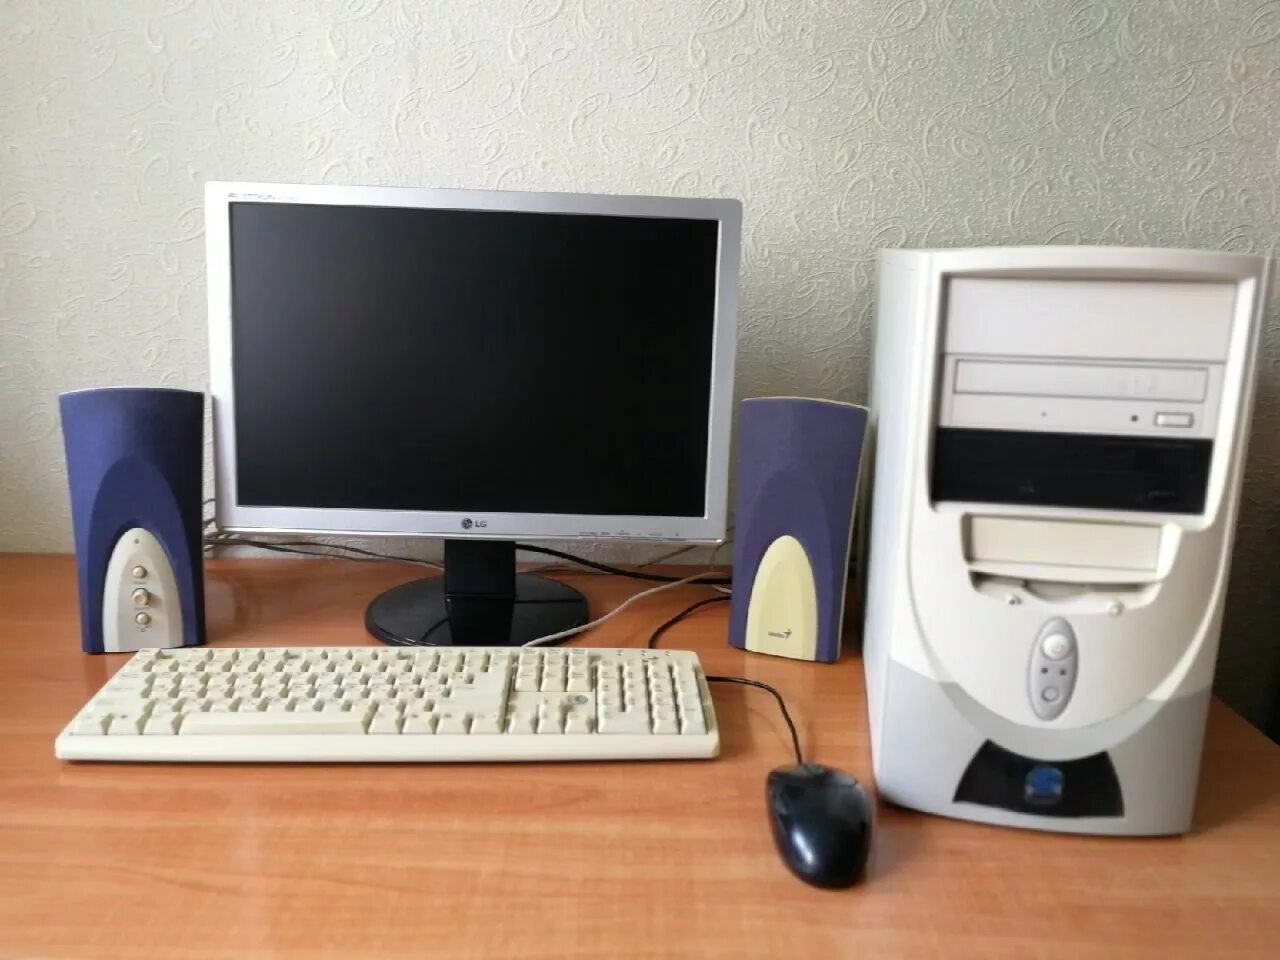 Монитор мыши. Системный блок с клавиатурой и мышью. Компьютер монитор клавиатура мышь. ПК С монитором и клавиатурой и мышкой. Компьютер монитор мышь клавиатура системный блок.